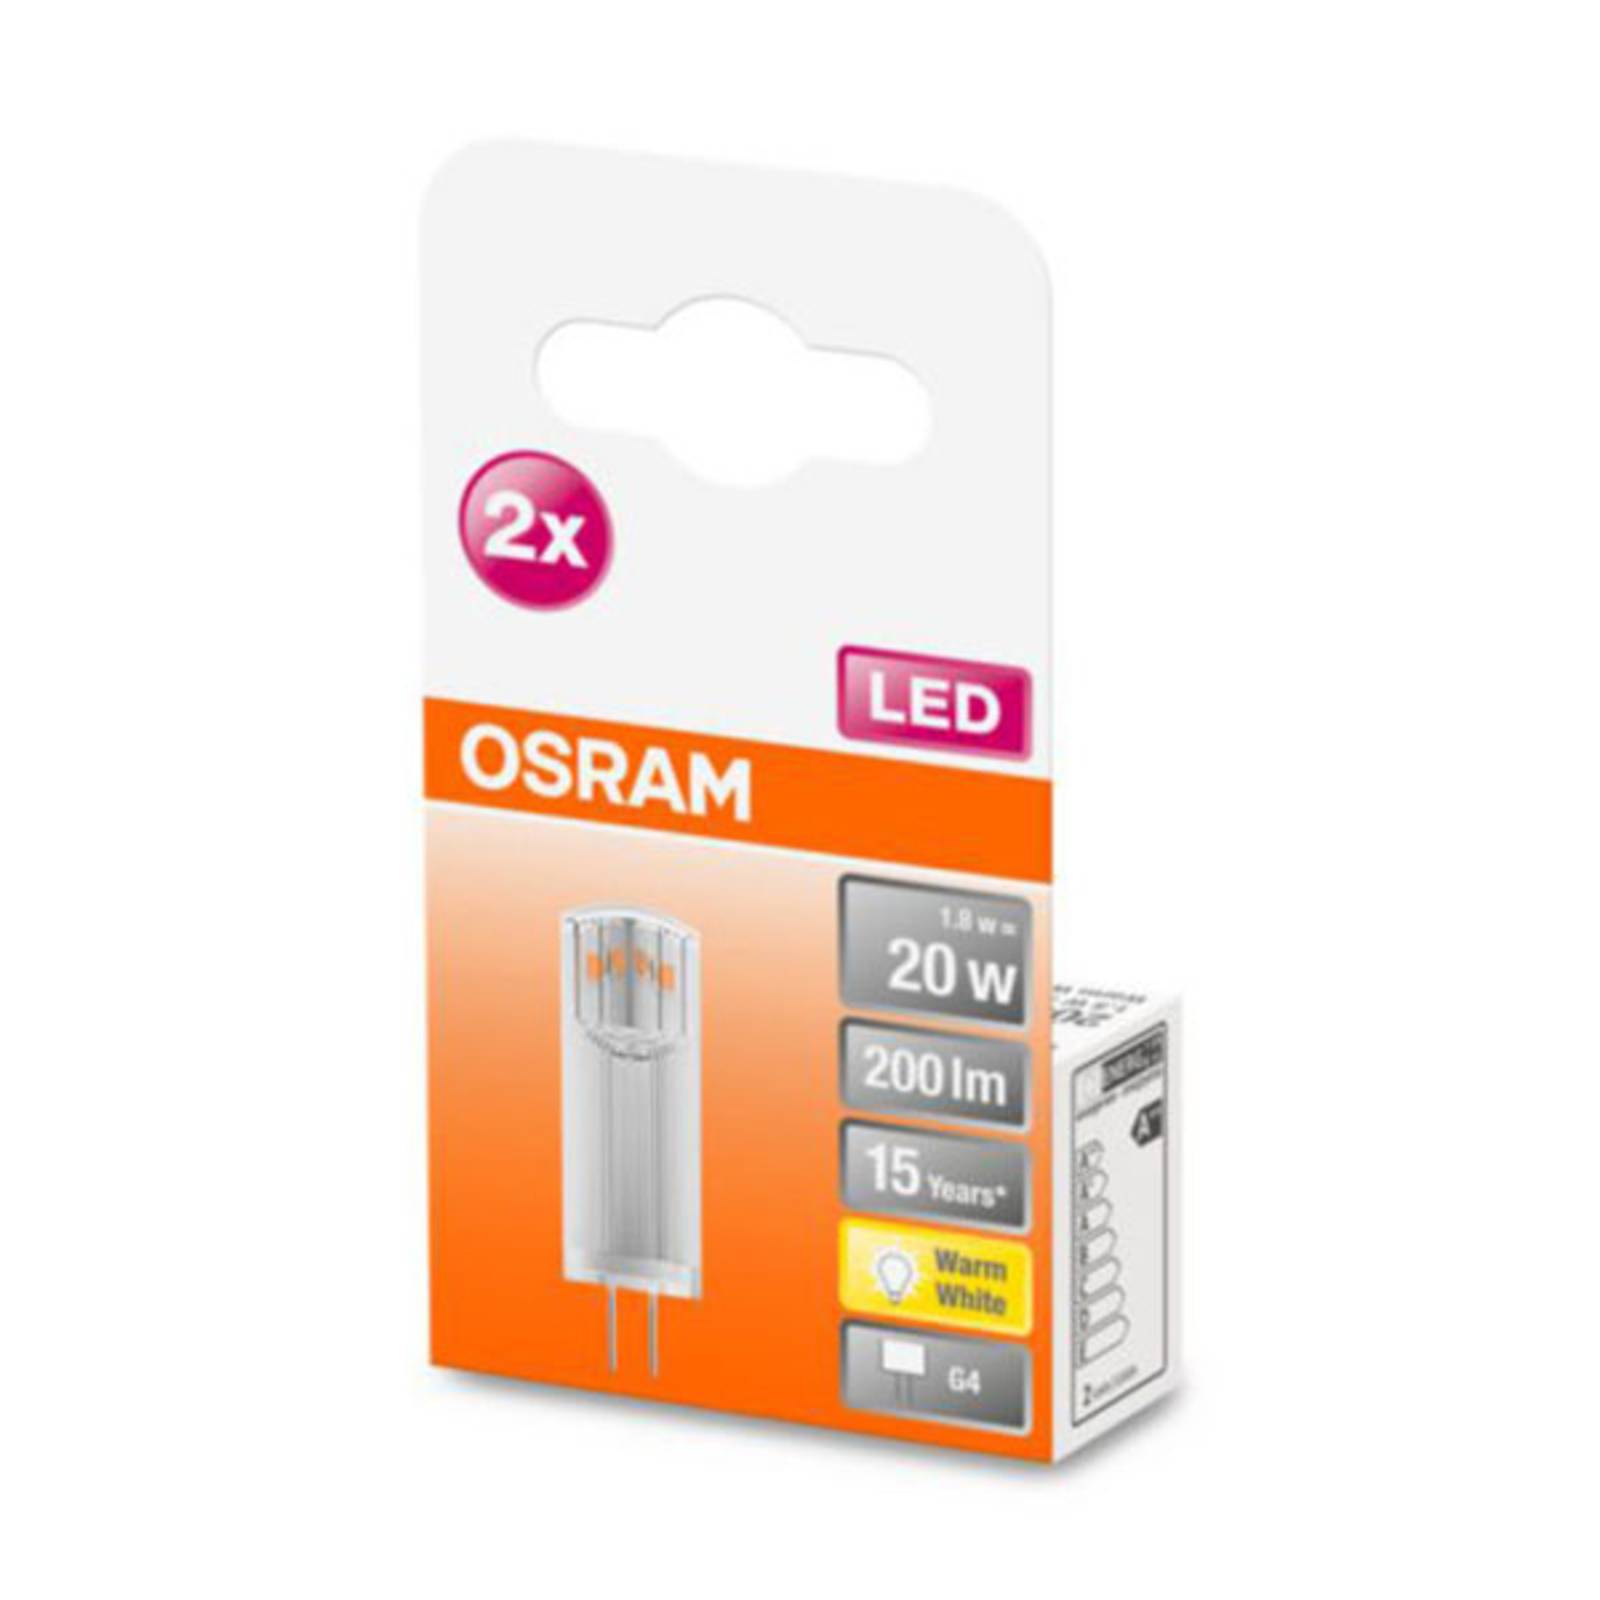 OSRAM OSRAM LED s paticí G4 1,8 W 2 700 K čirá 2 balení